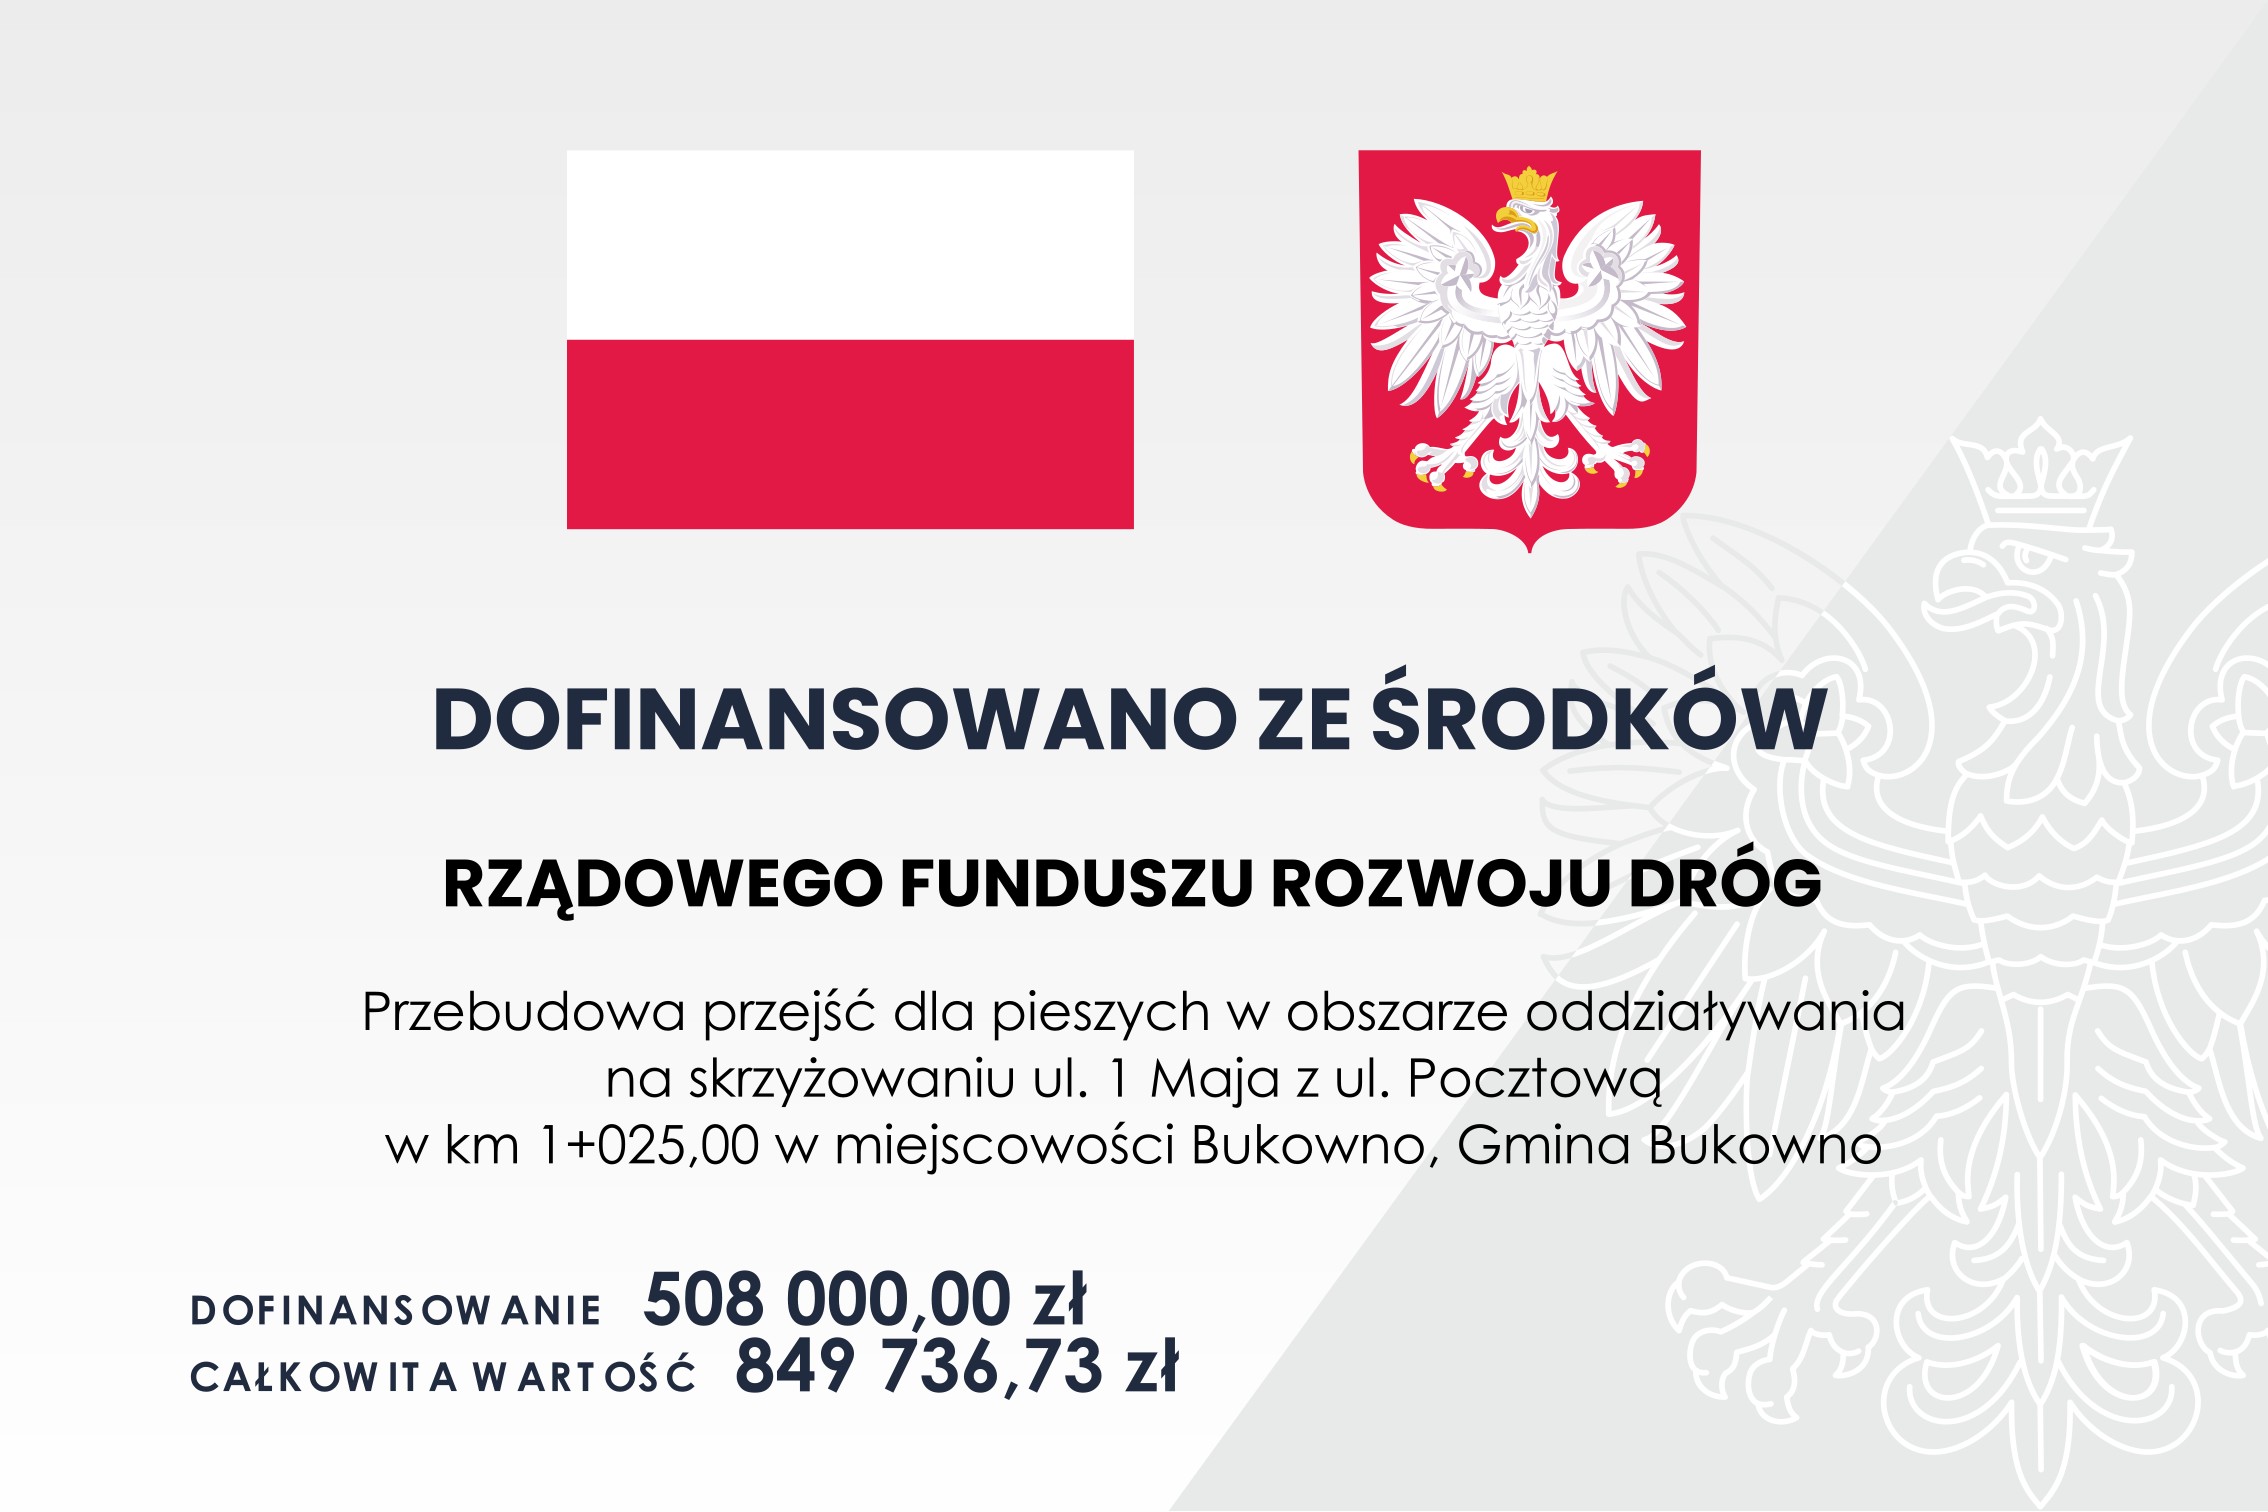 Przebudowa przejść dla pieszych w obszarze oddziaływania na skrzyżowaniu ul. 1 Maja z ul. Pocztową w km 1+025,00 w miejscowości Bukowno, Gmina Bukowno.